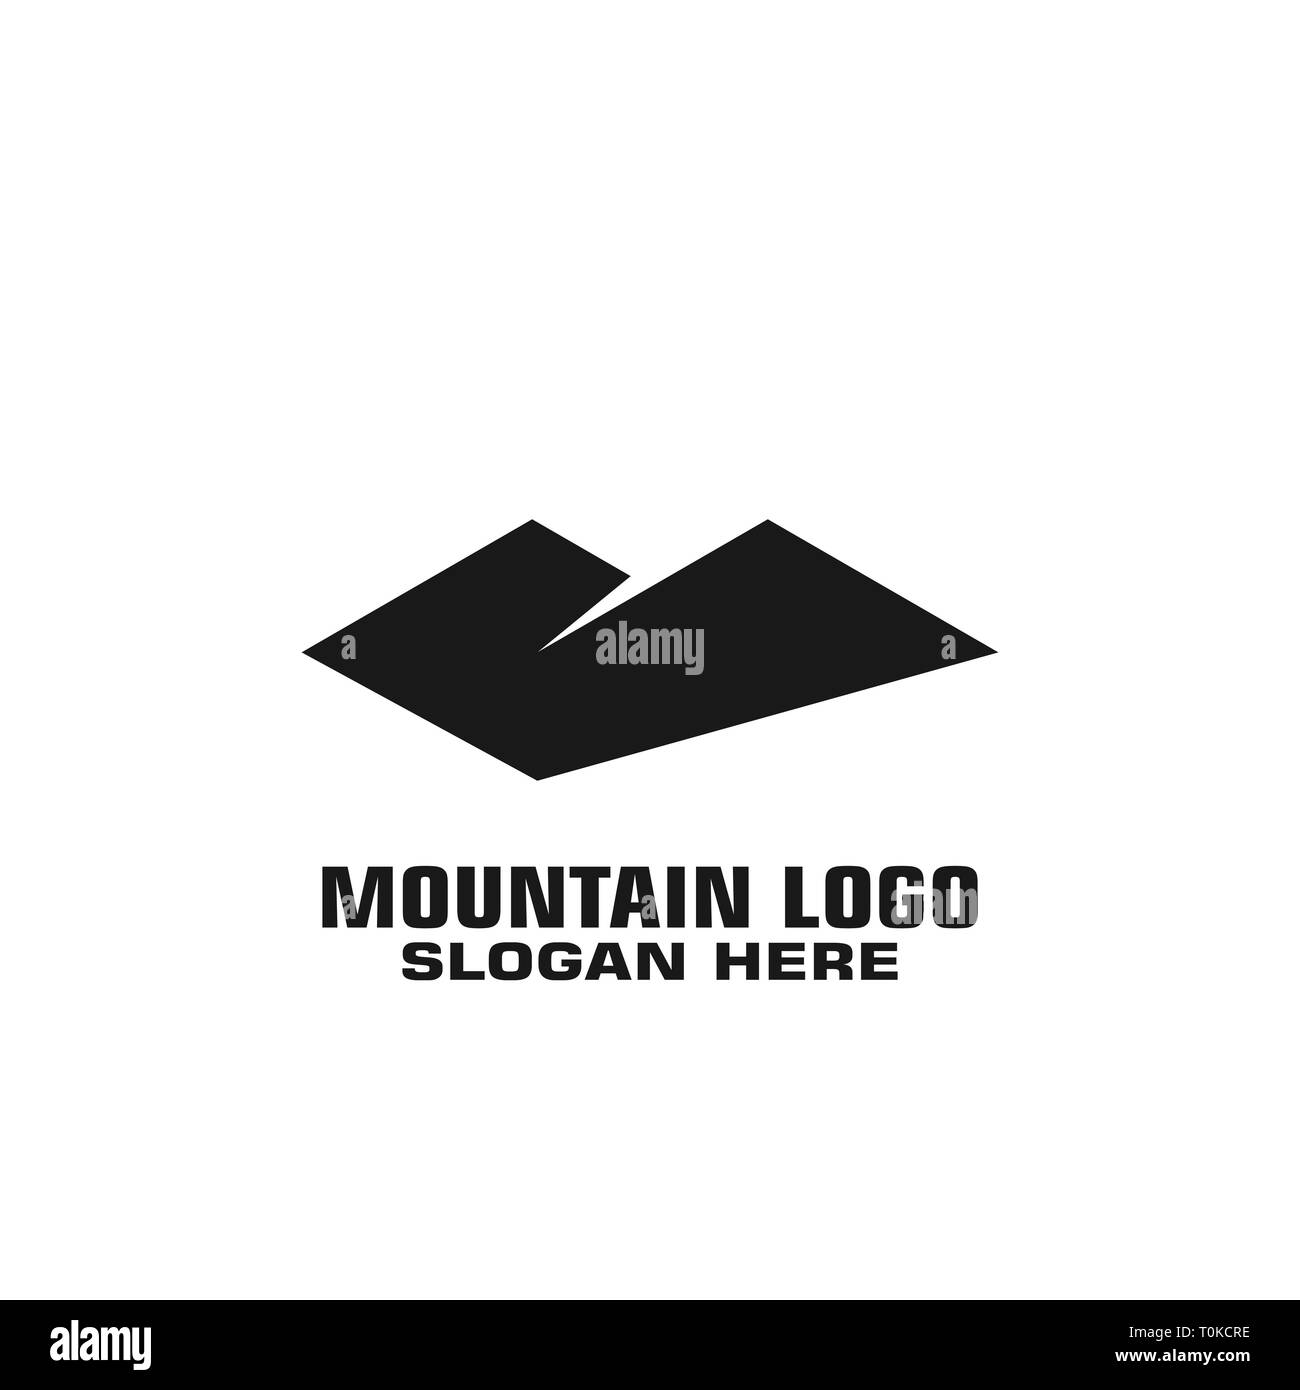 Mountain logo vector, mountain graphic logo template, Stock Vector